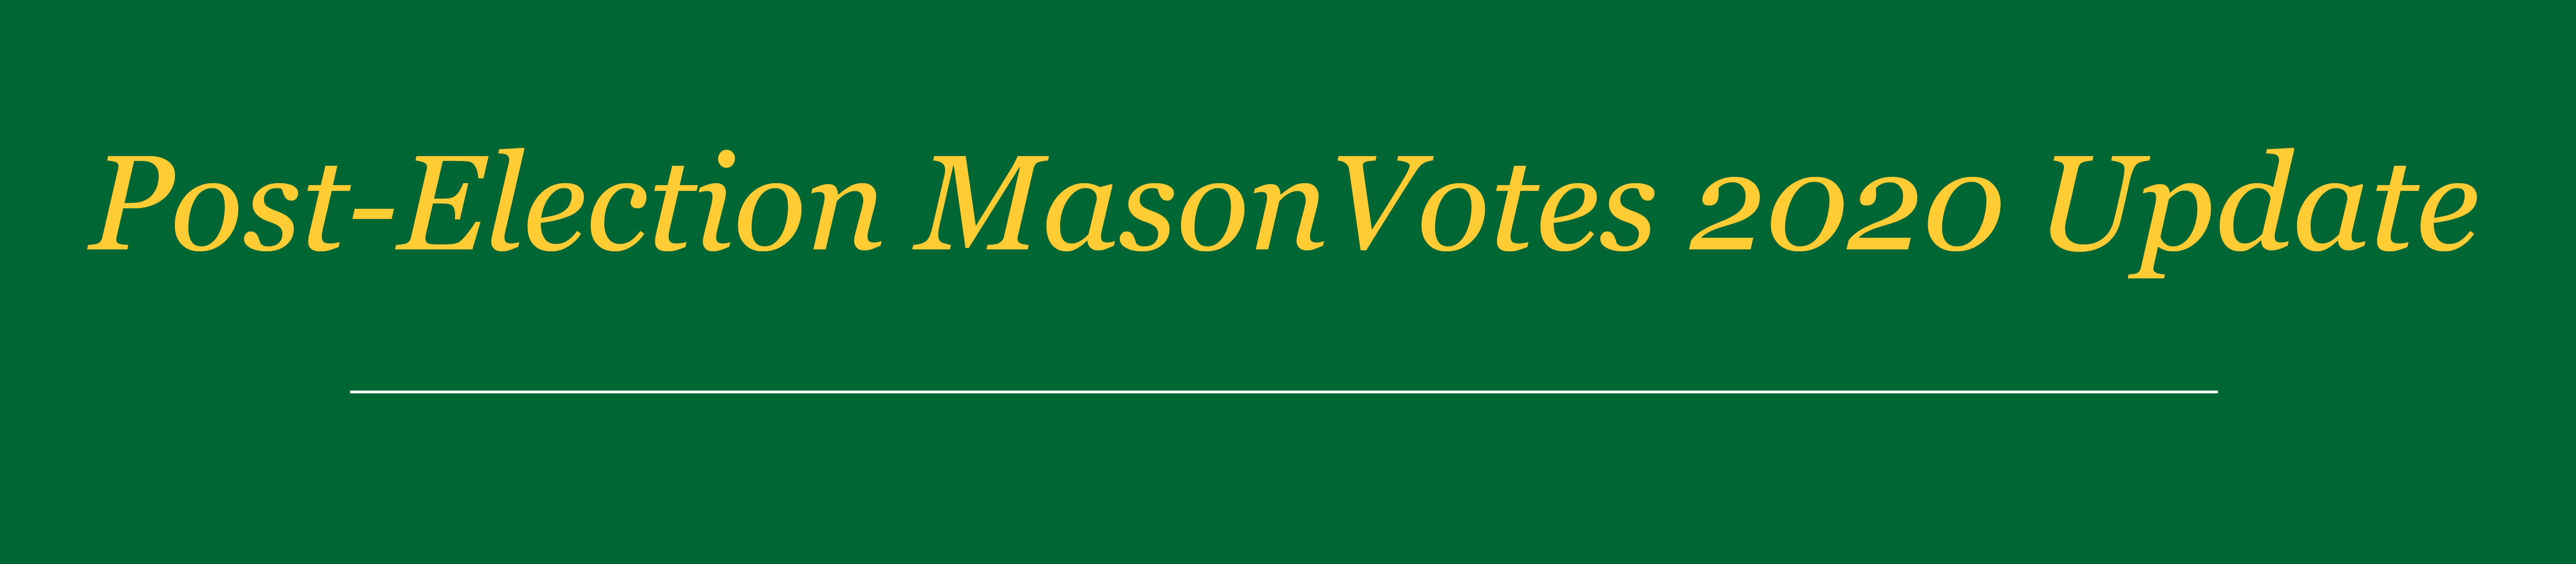 Mason Votes Update Header